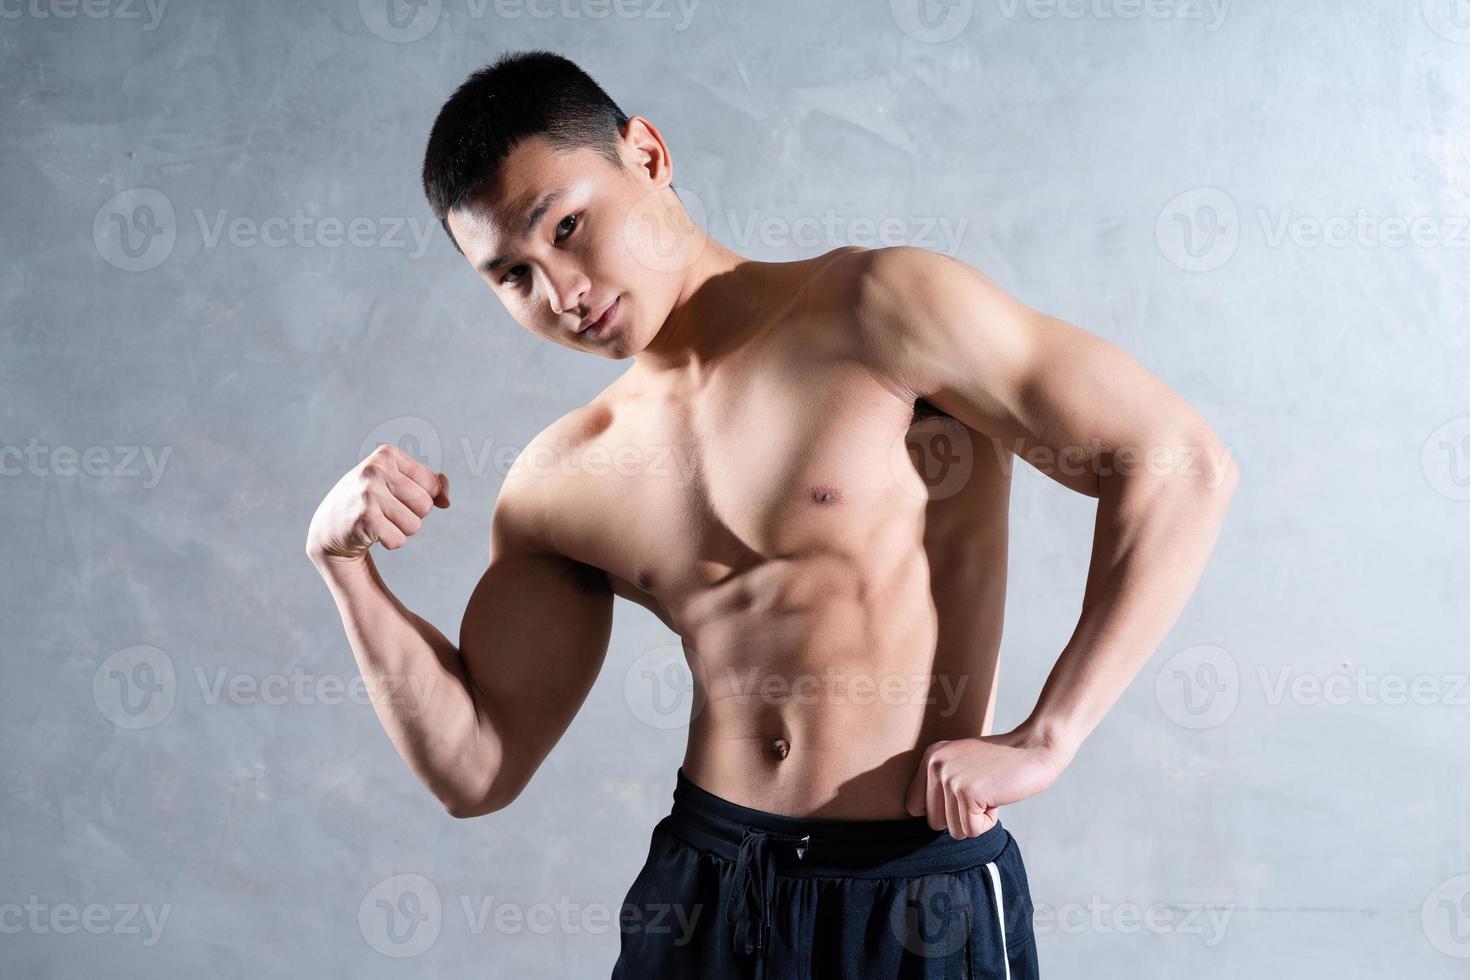 homem asiático musculoso posando em fundo cinza foto